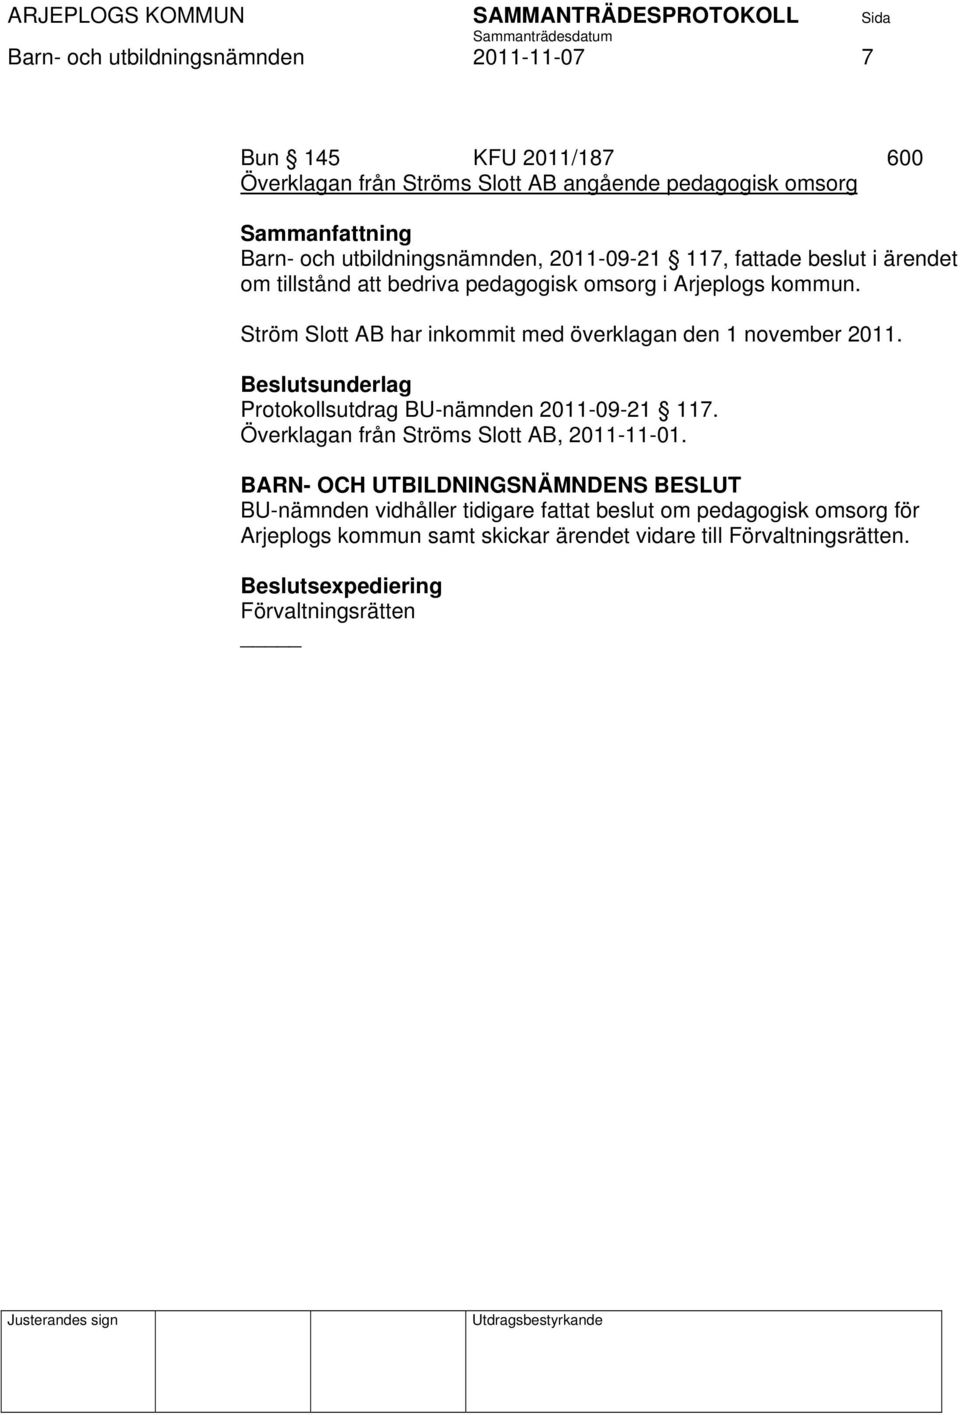 Ström Slott AB har inkommit med överklagan den 1 november 2011. Beslutsunderlag Protokollsutdrag BU-nämnden 2011-09-21 117.